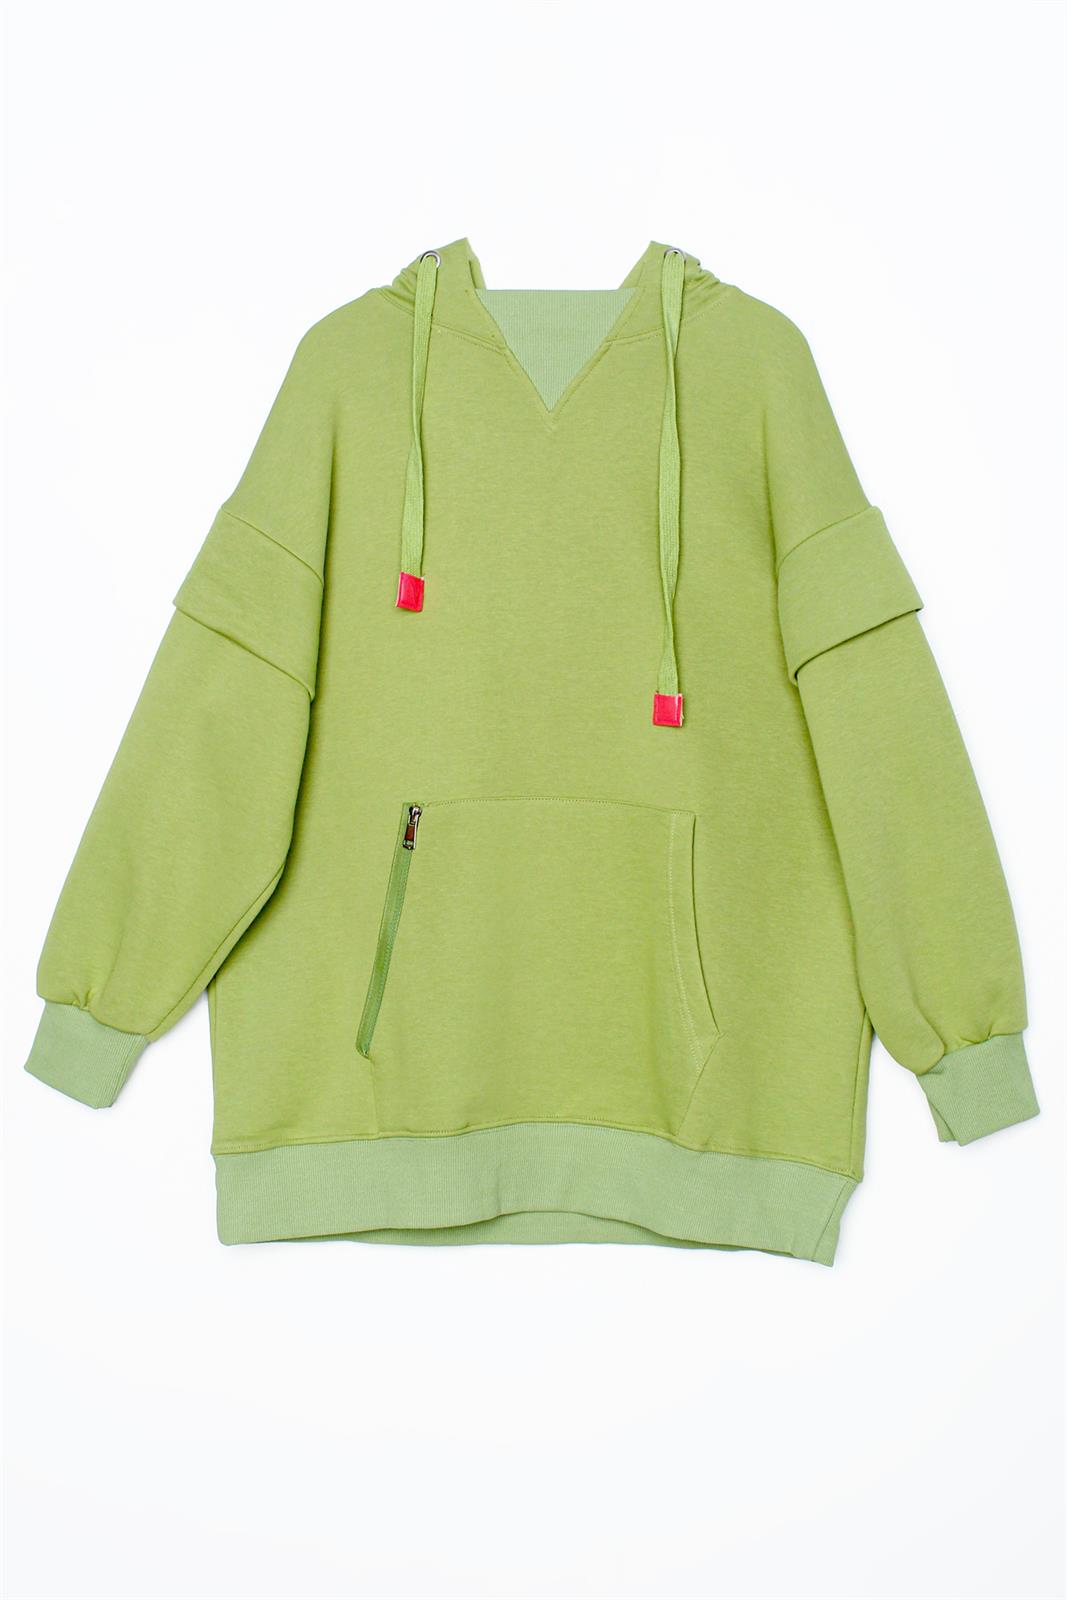 Allday Fıstık Yeşili Cebi Fermuarlı Kapüşonlu Oversize Sweatshirt